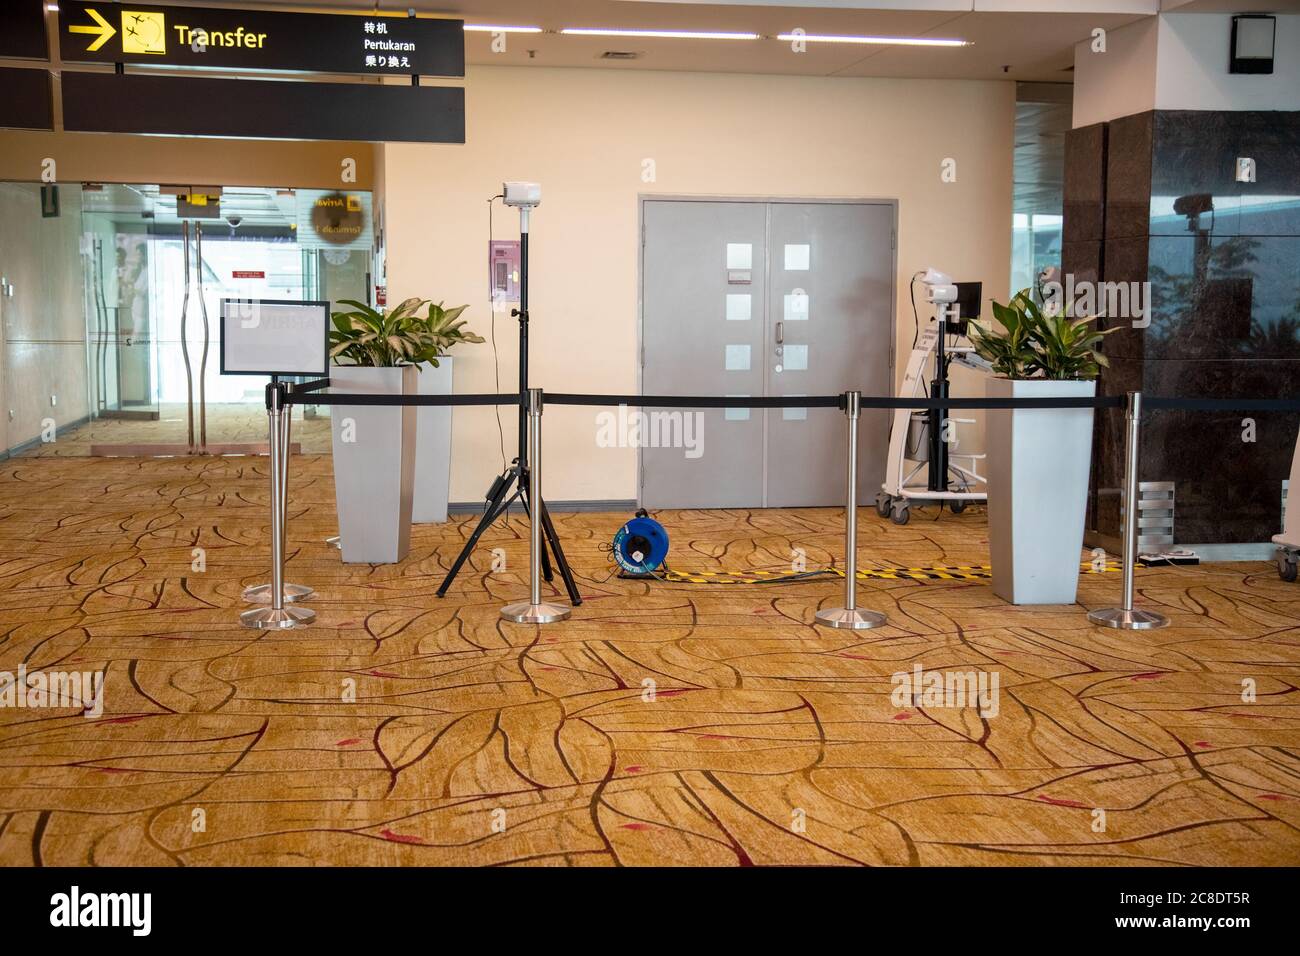 SINGAPUR - JULI 21. 2020: Temperaturregelung mit Wärmebildkamera im Passagierbereich des Terminals am Changi Airport. Gegenwirkung covid-19 Stockfoto